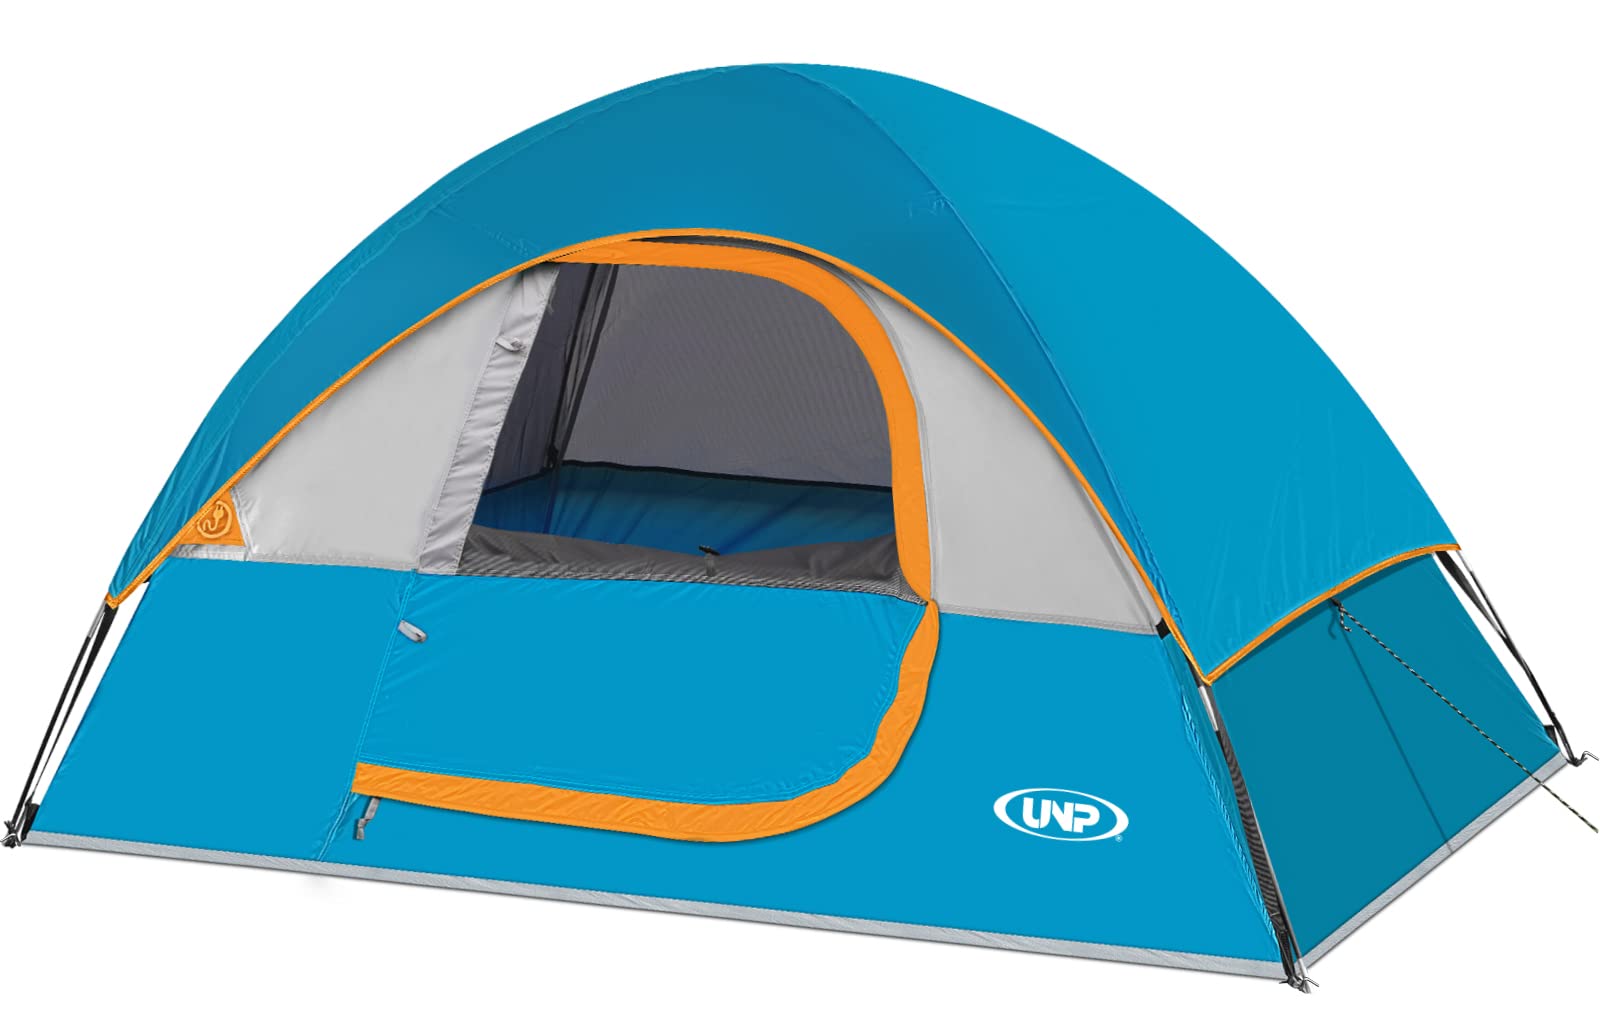 UNP camping tent